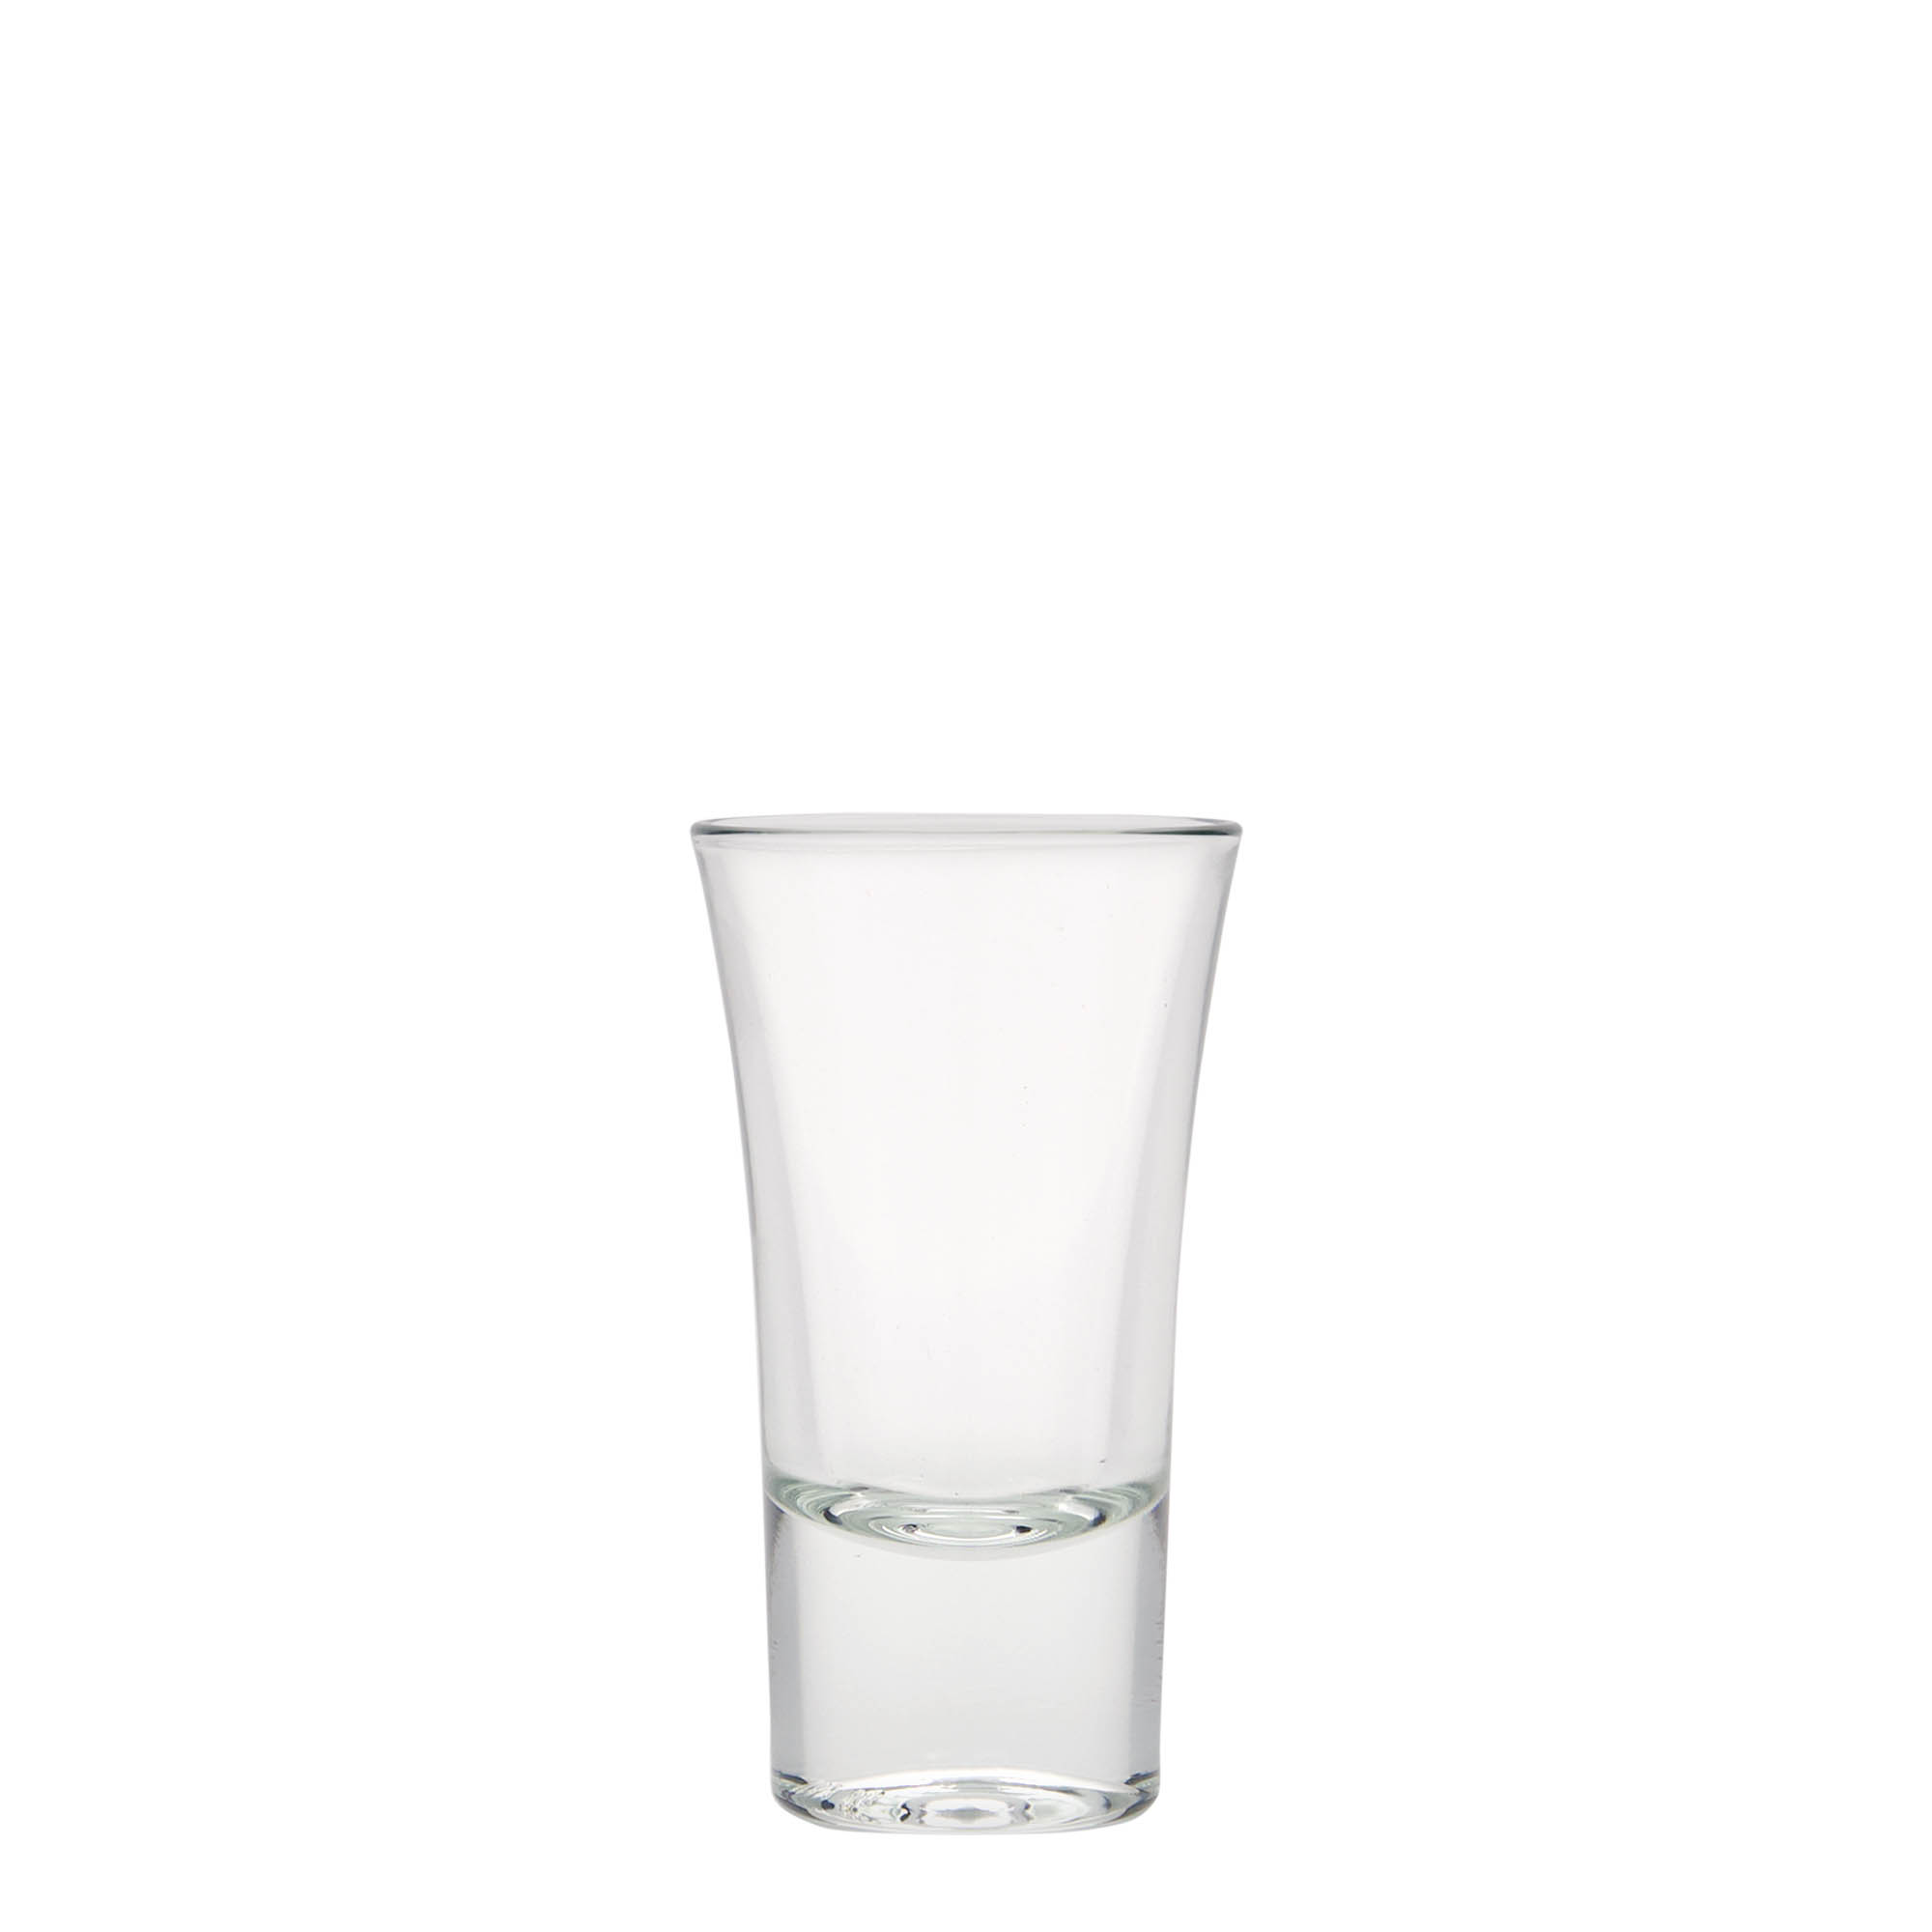 40 ml shot glass 'Seniorstamper'